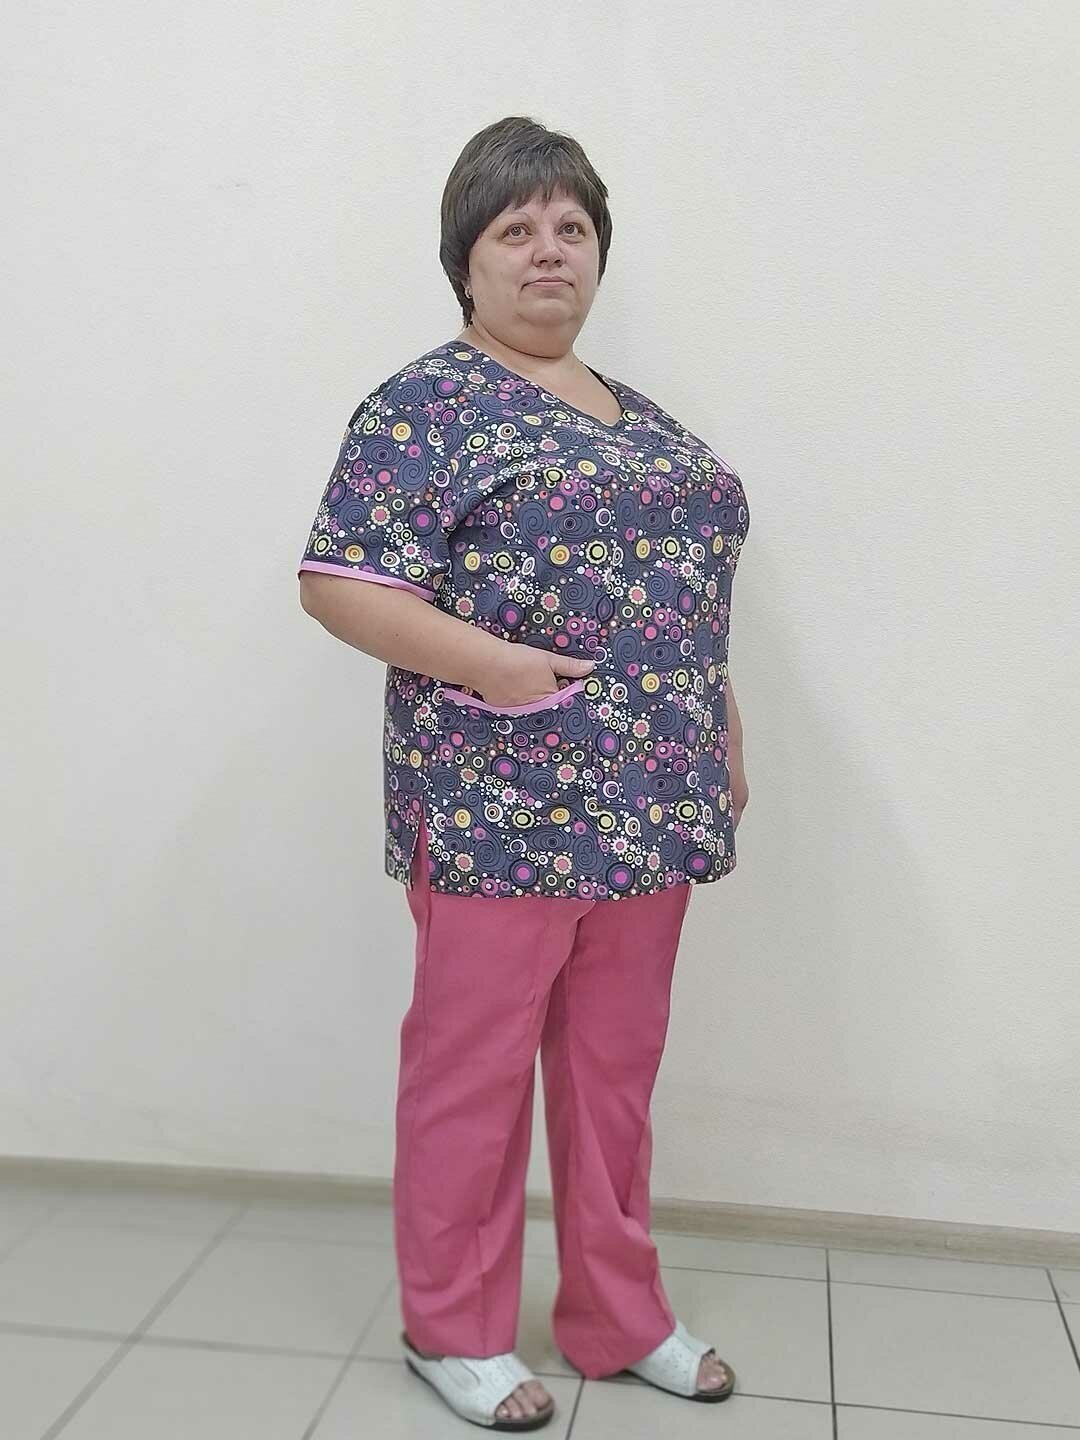 Блуза женская, производитель Фабрика швейных изделий №3, модель М-550, рост 164, размер 58, цвет набивной рисунок разноцветными кружочками